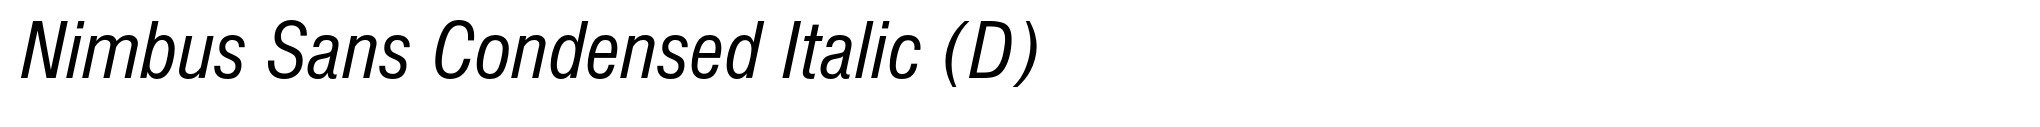 Nimbus Sans Condensed Italic (D) image